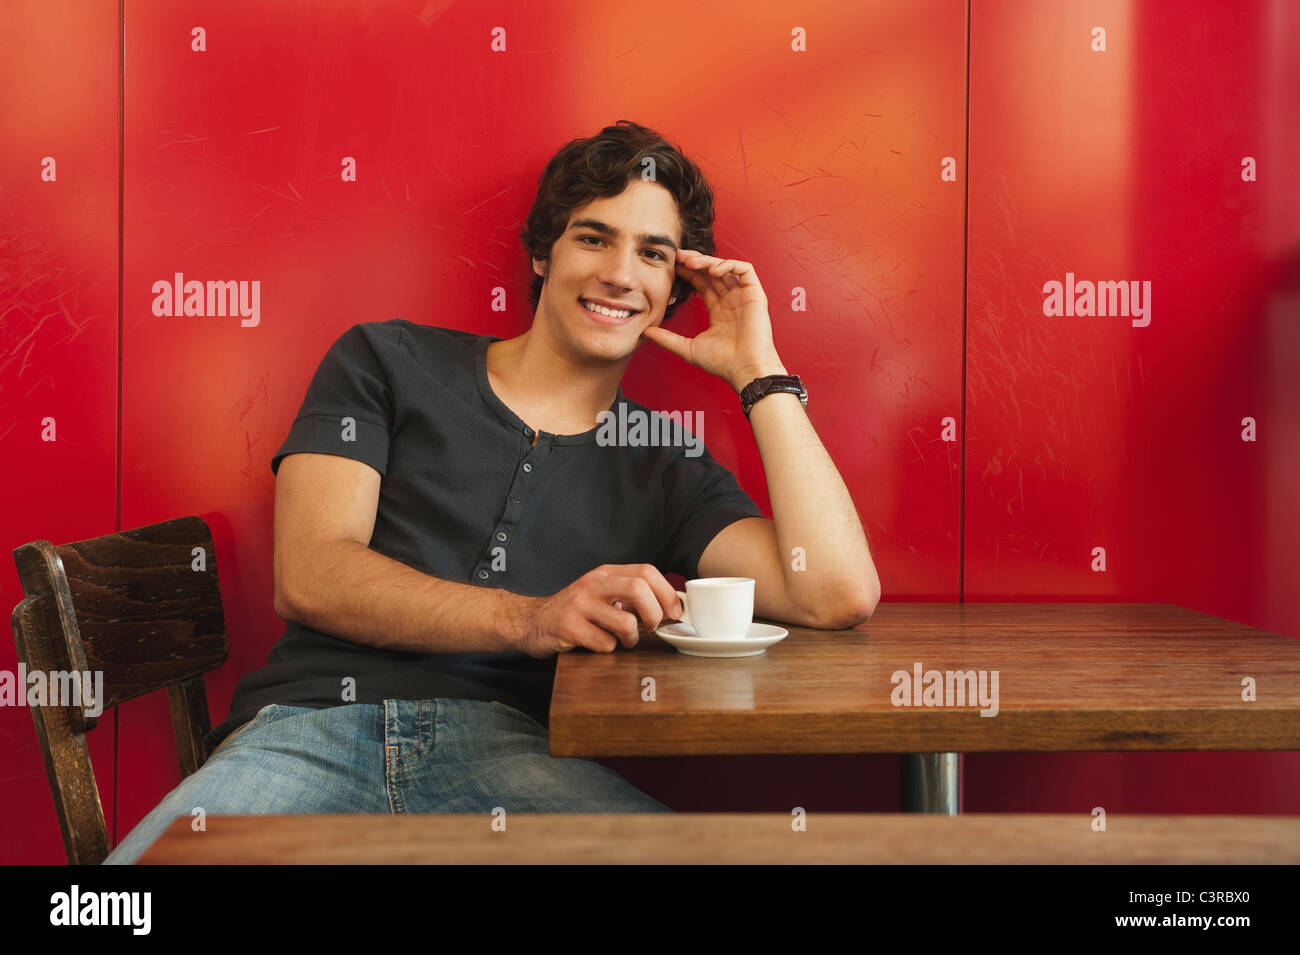 Deutschland, München, junger Mann im Café, Lächeln, Porträt Stockfoto